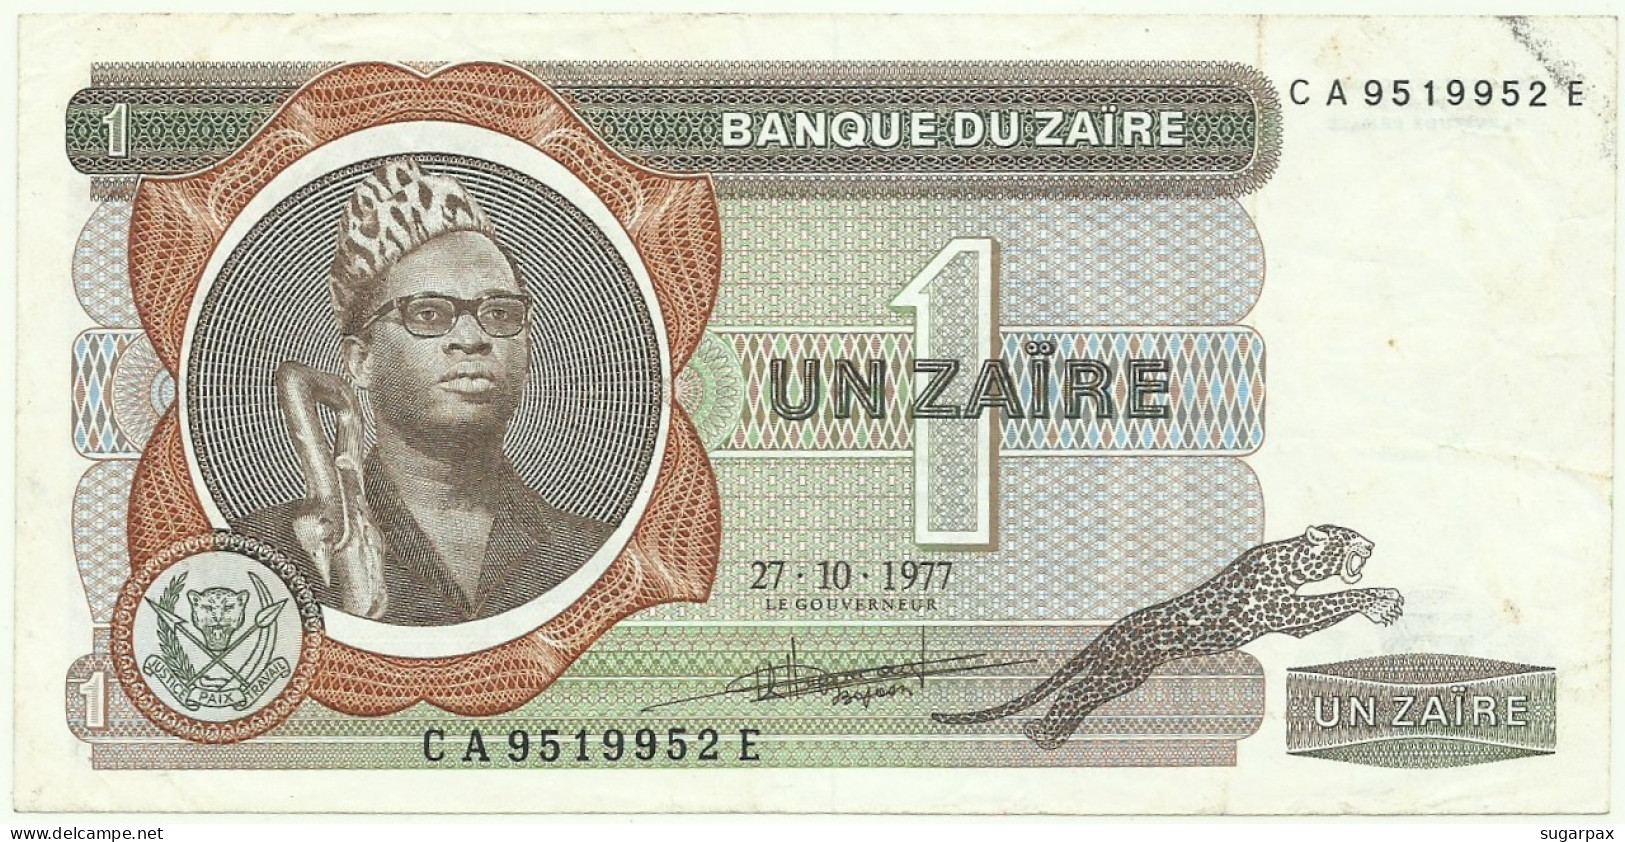 Zaïre - 1 Zaïre - 27.10.1977 - Pick 18.b -  Sign. 4 - Prefix C A , Sufix E - Mobutu - Zaïre